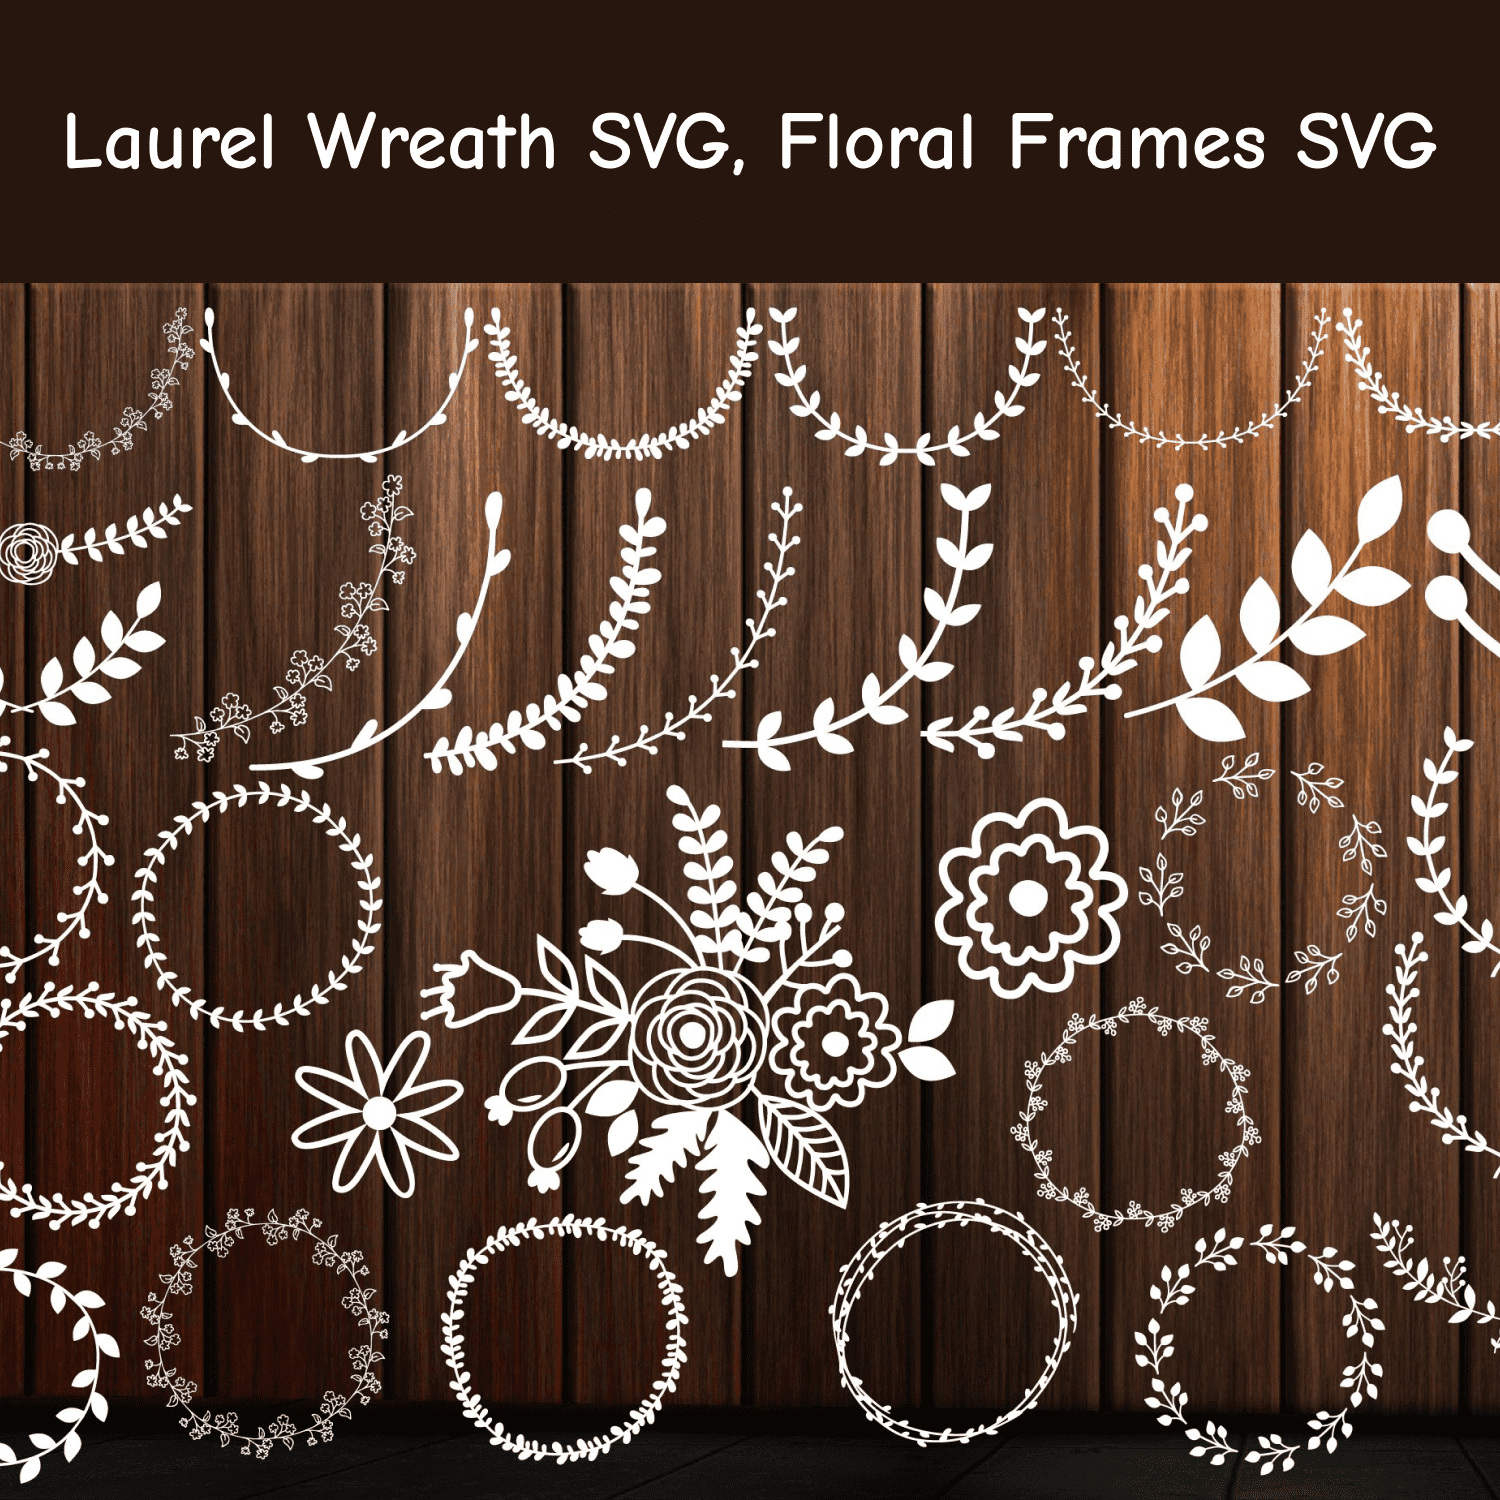 Laurel Wreath SVG, Floral Frames SVG.